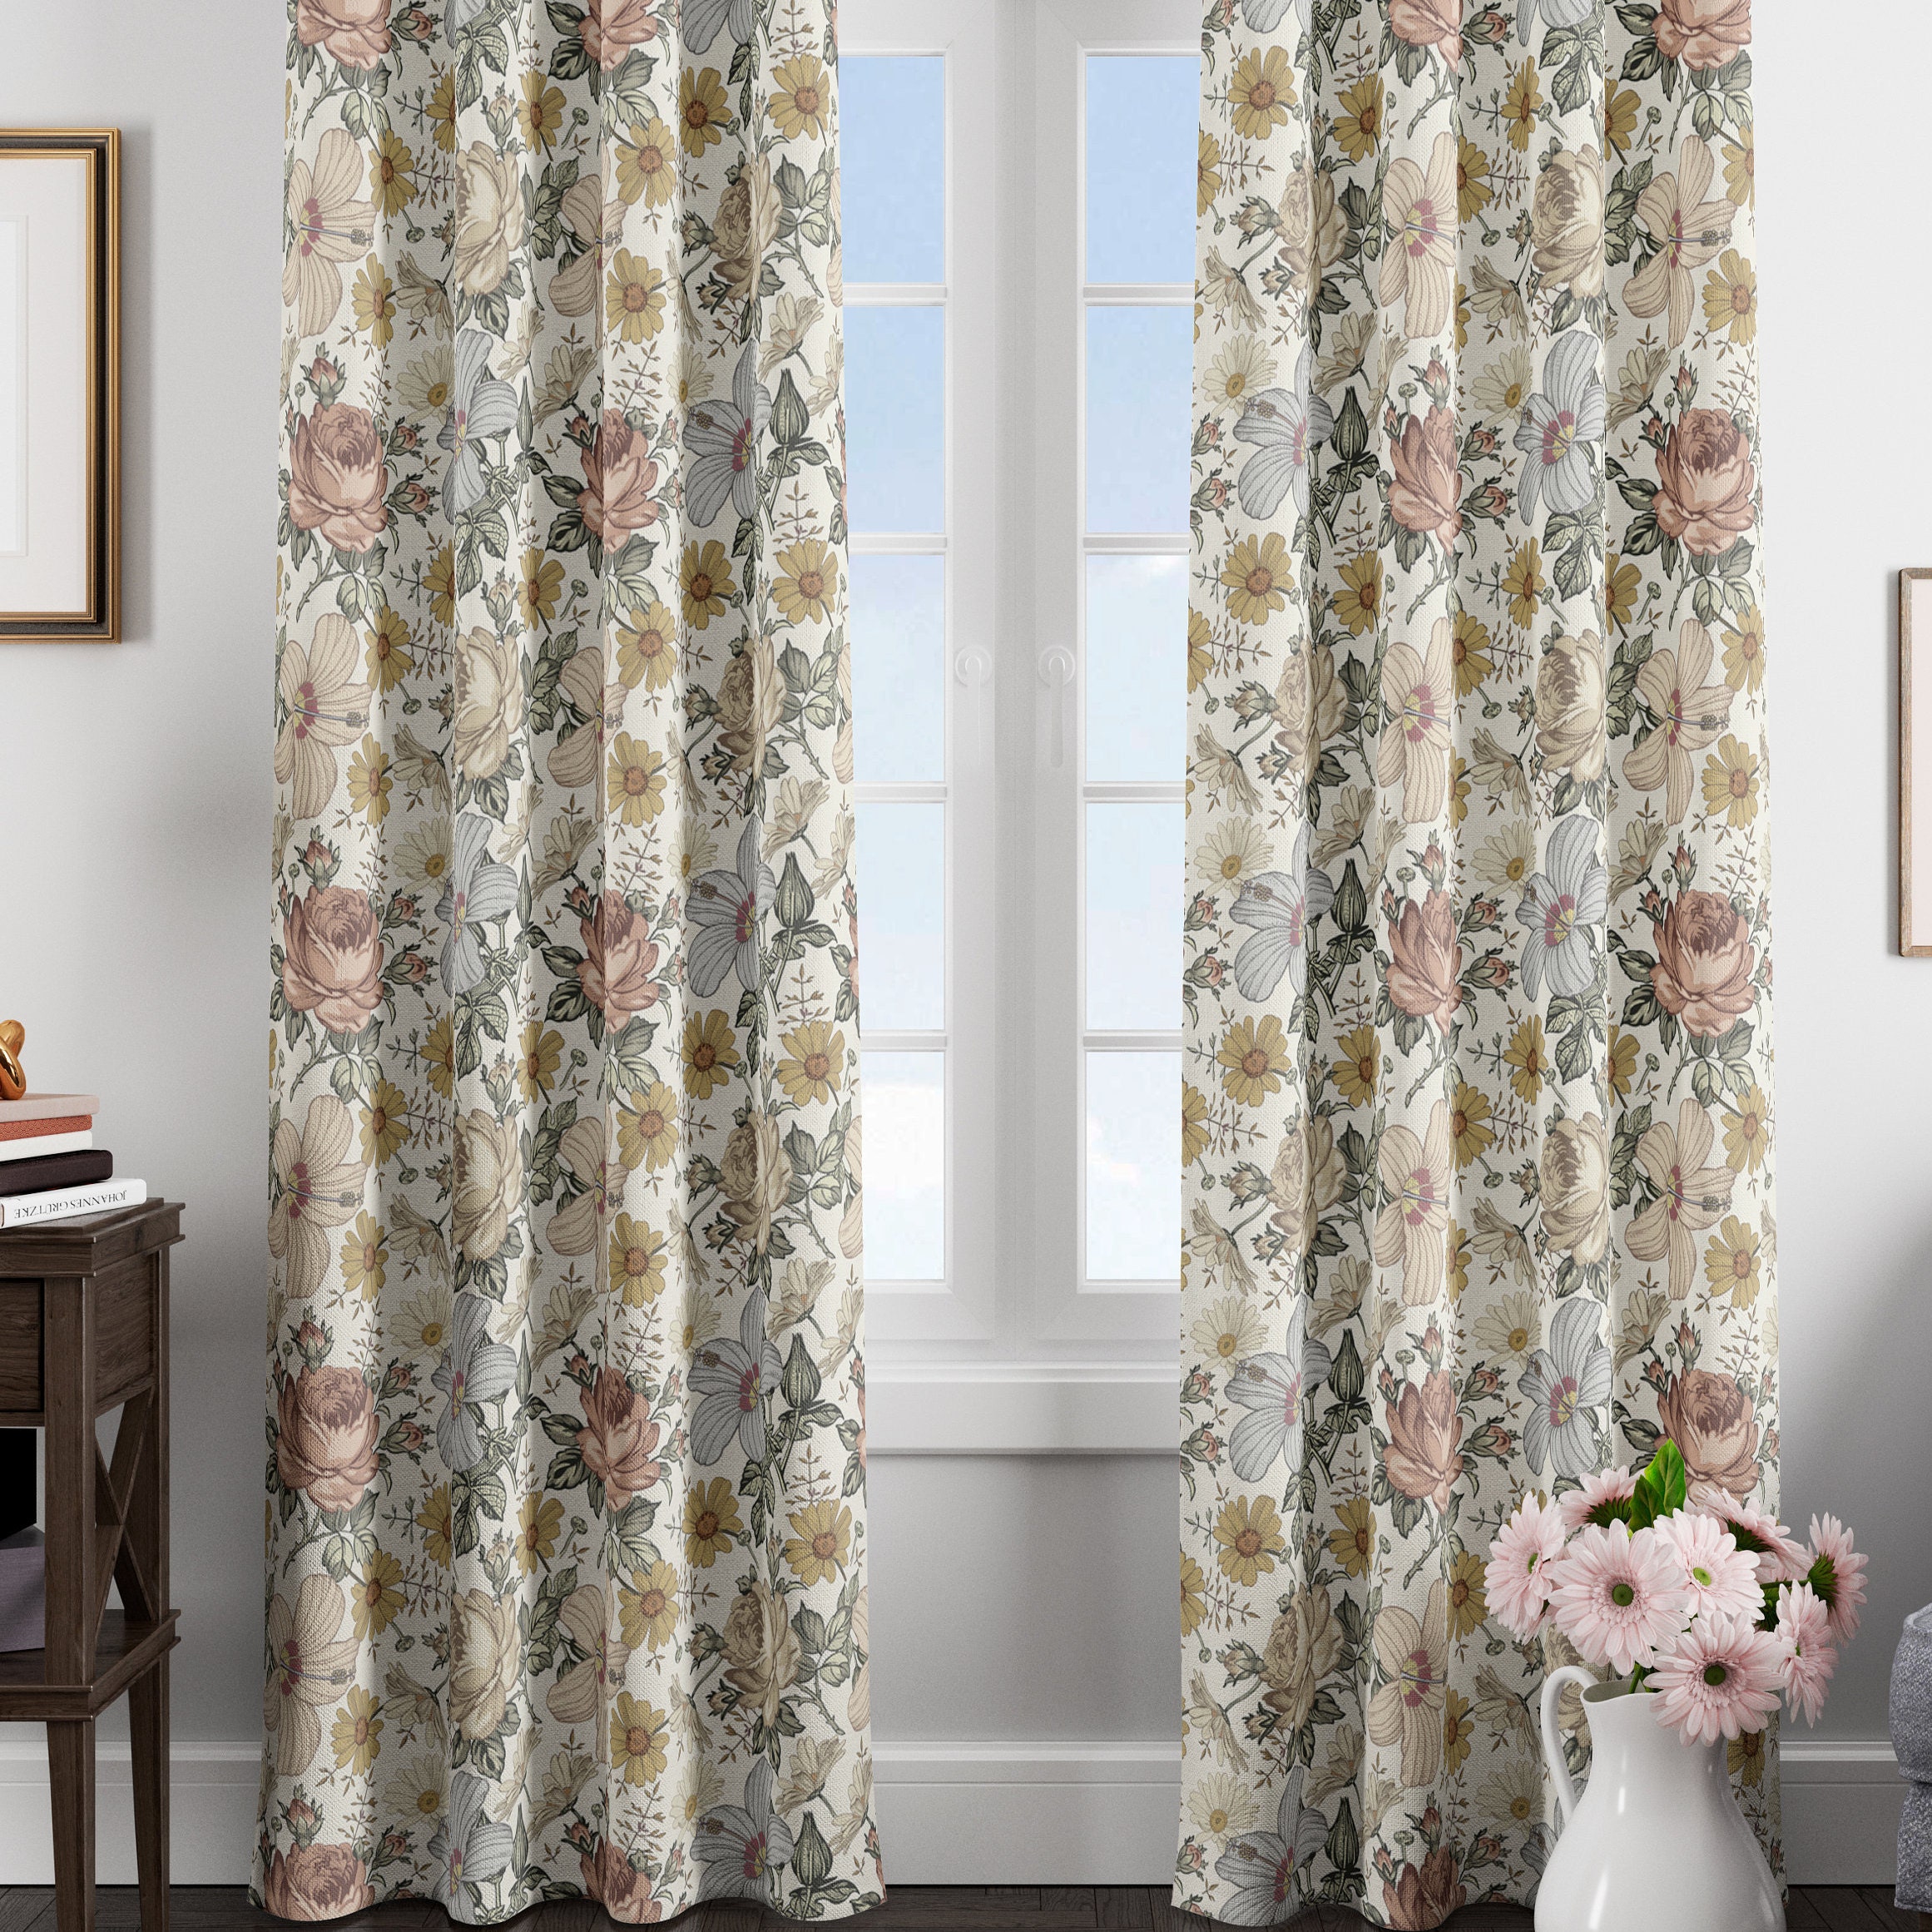 Curtain vintage floral linen cotton blackout window | Etsy